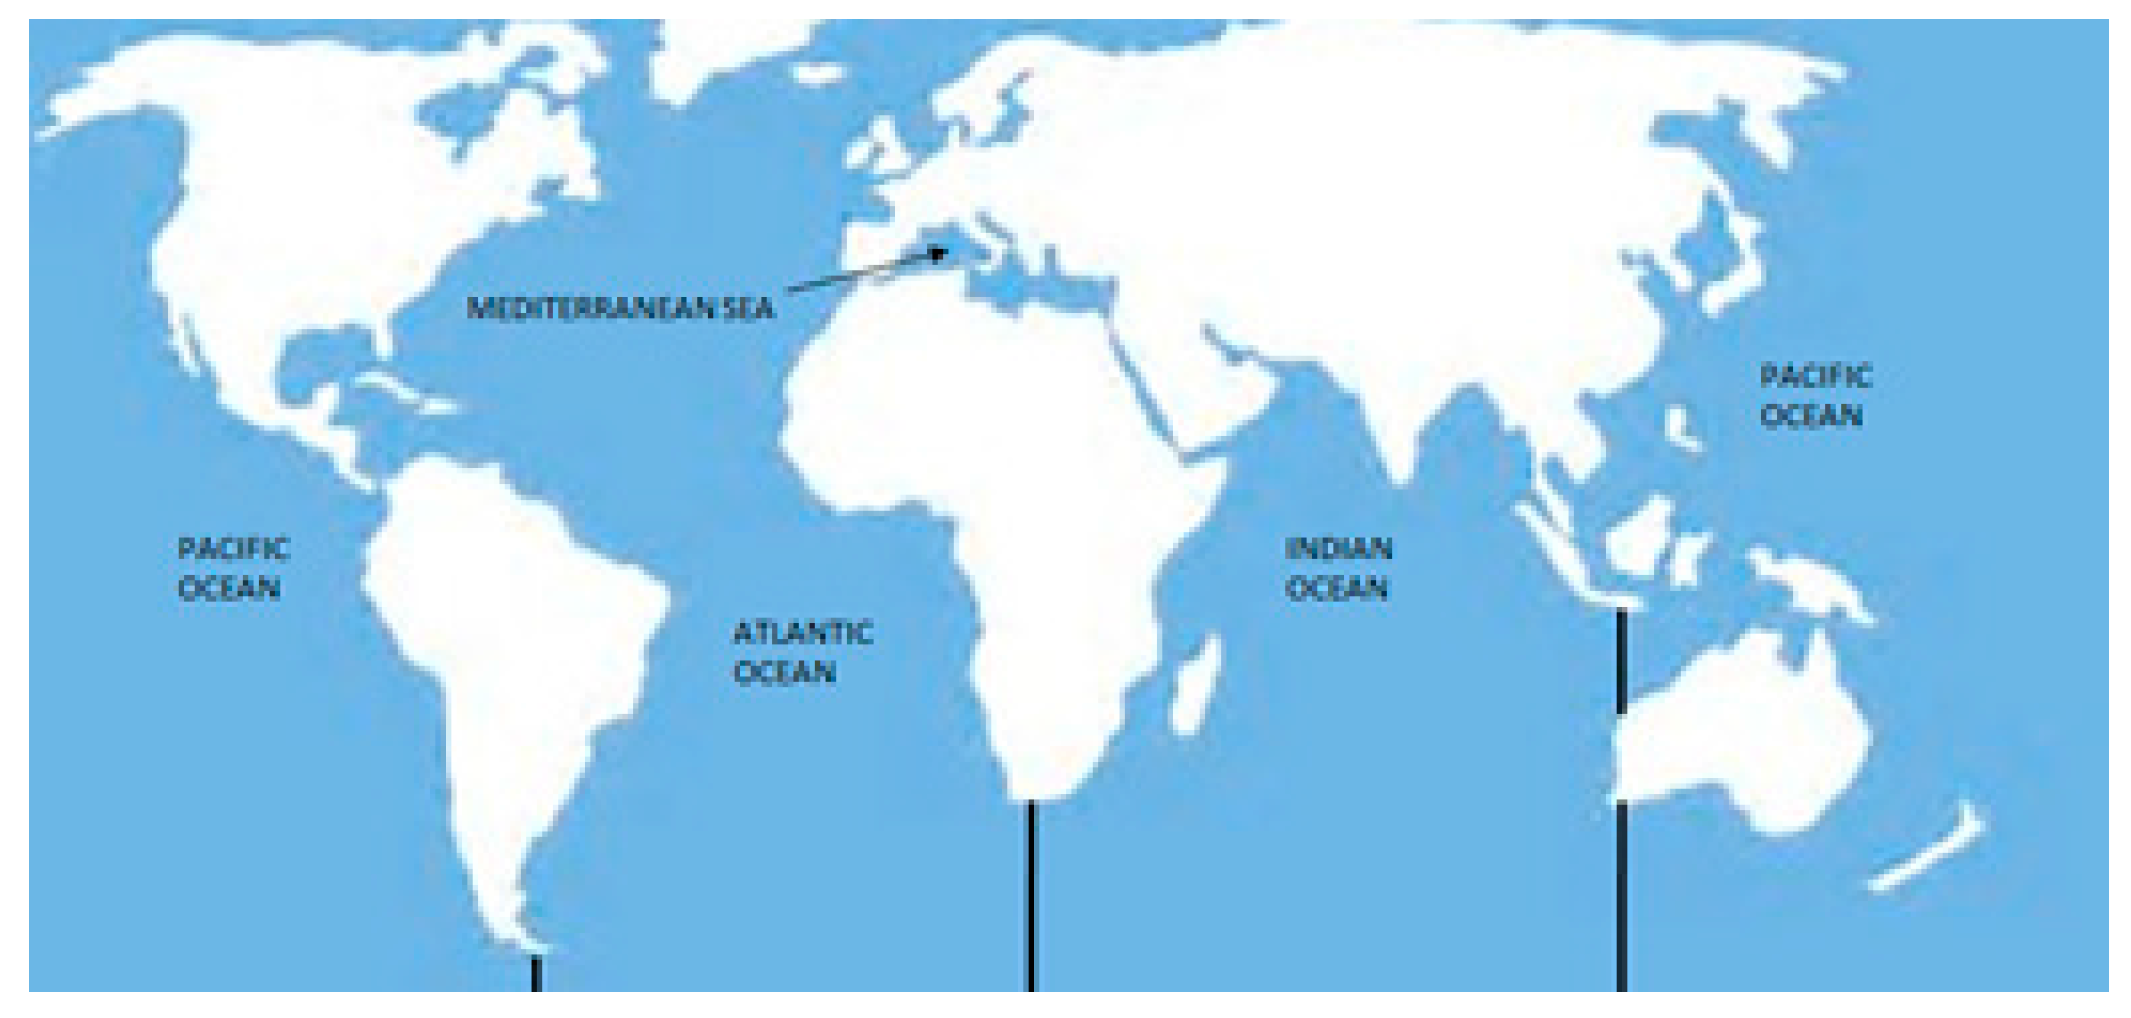 Pacific Ocean And Atlantic Ocean Map 